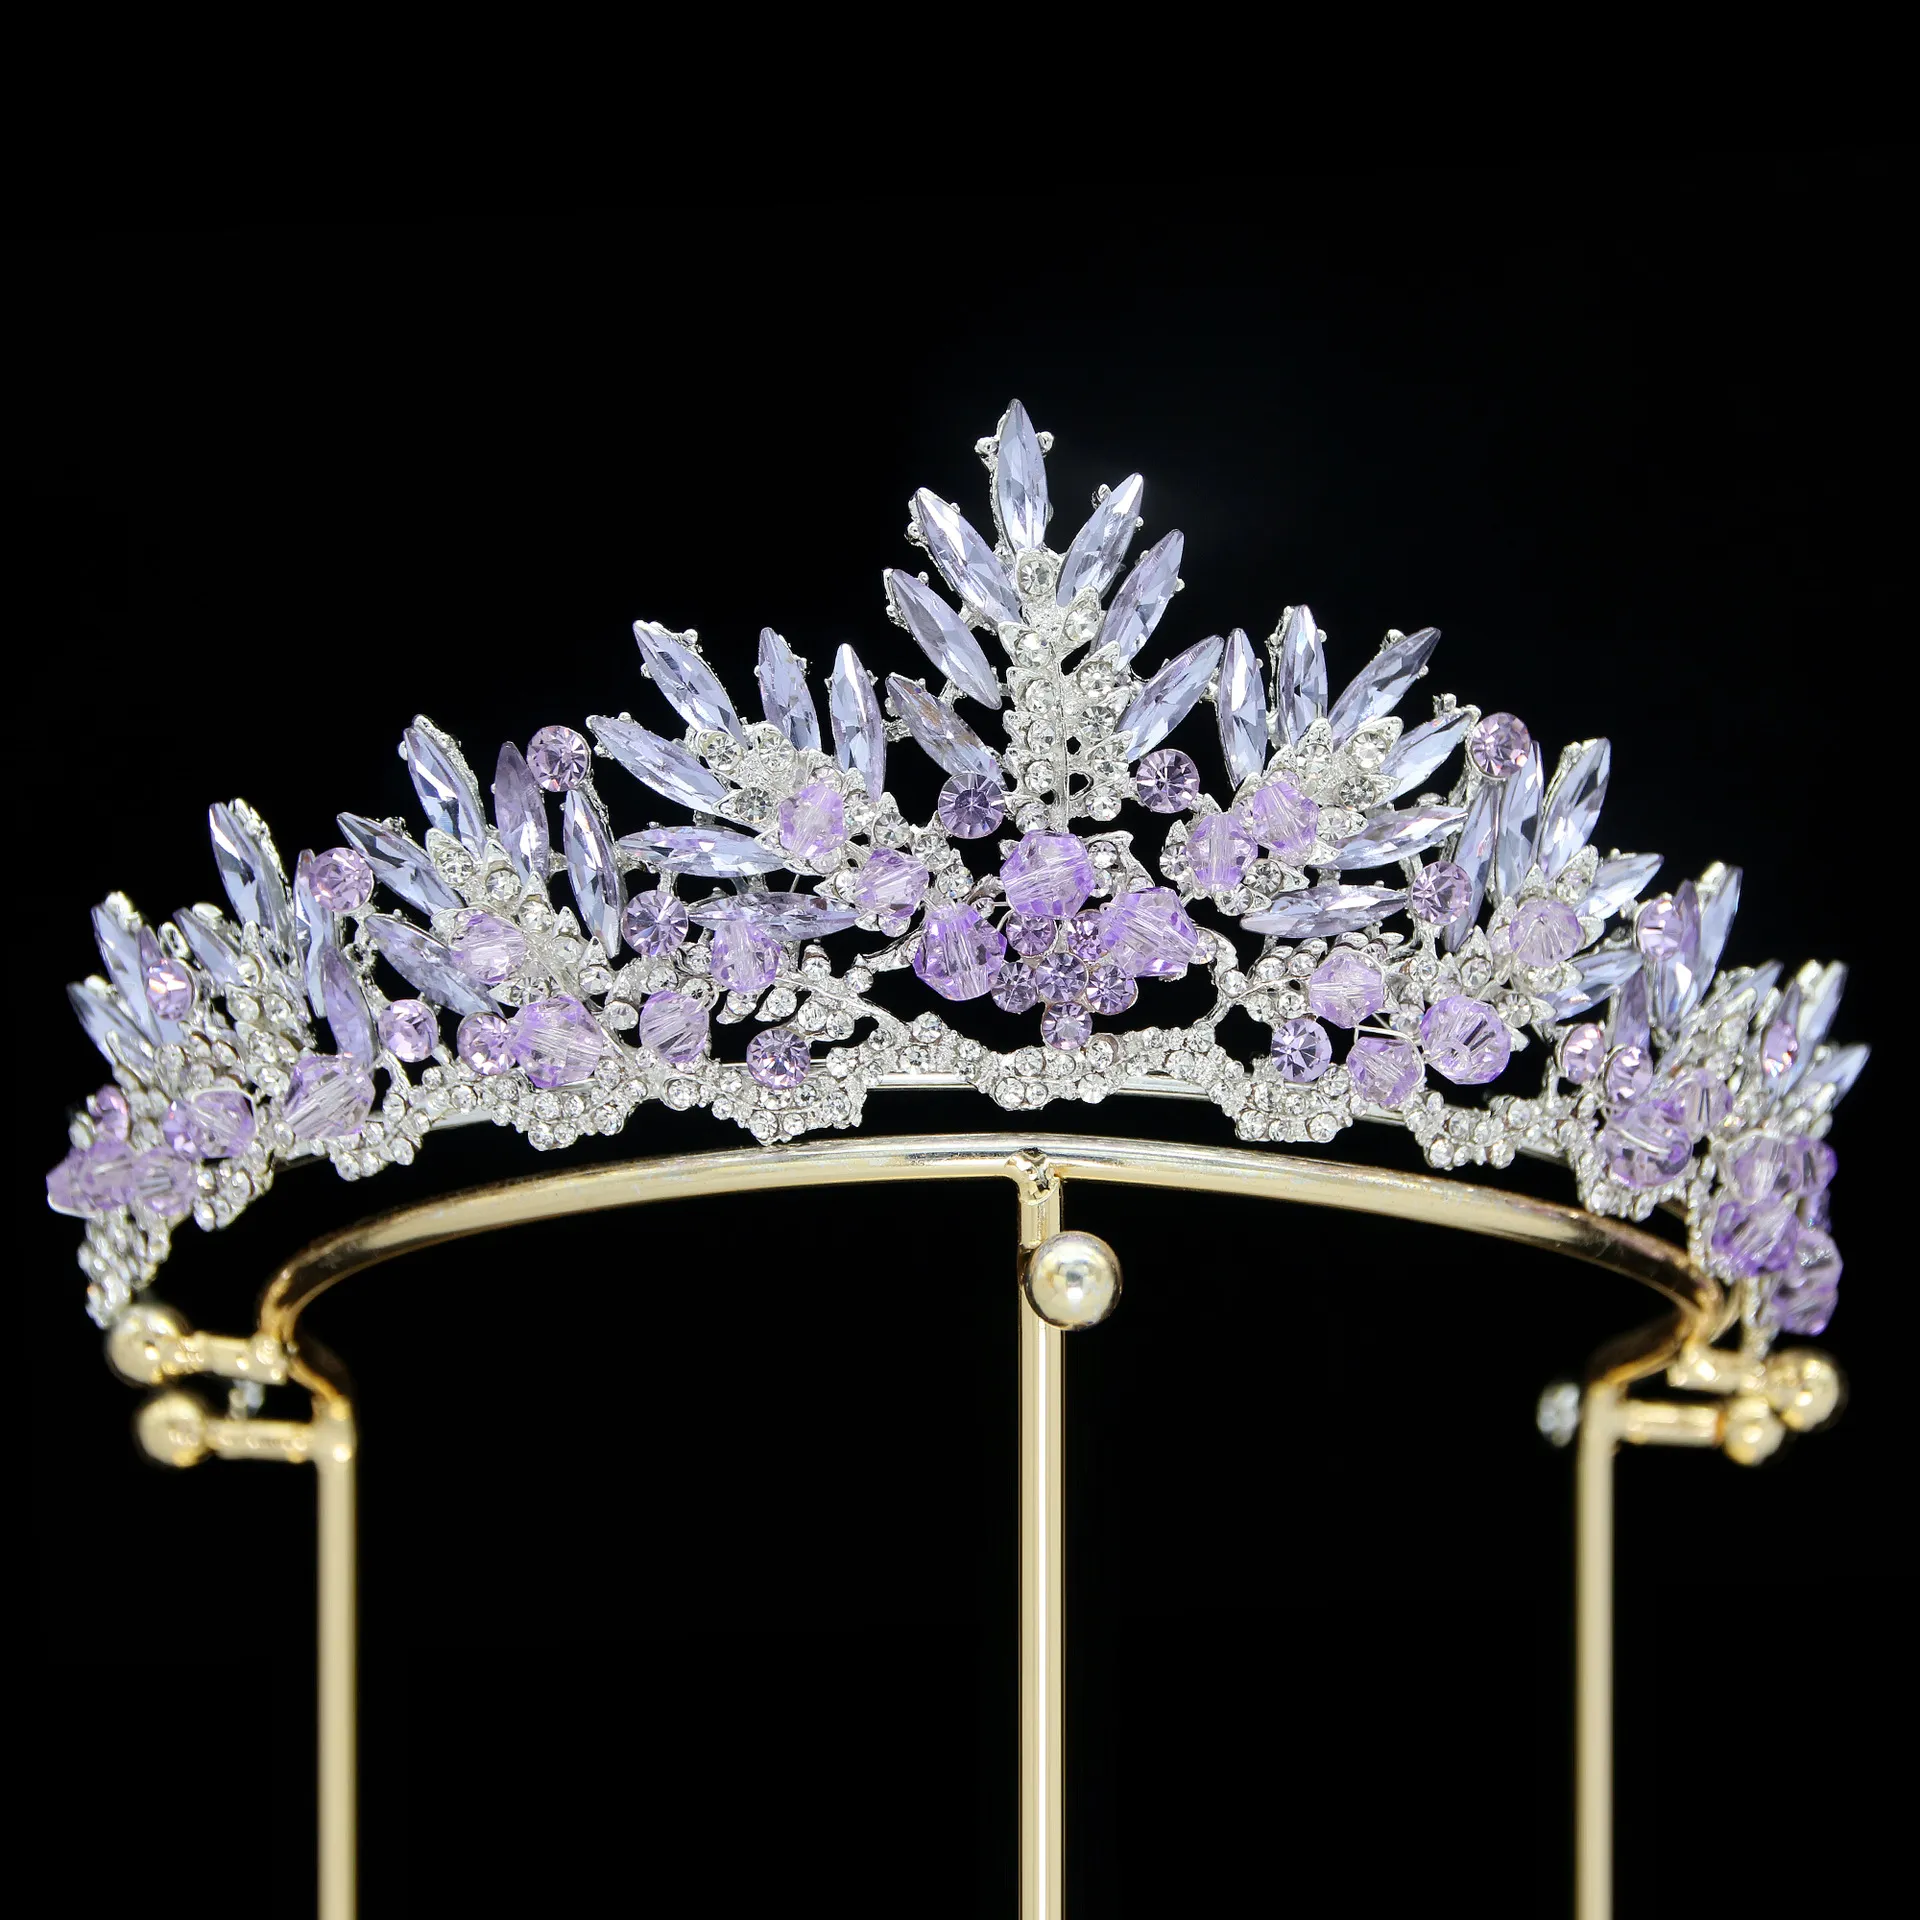 Восемь цветов кристаллов диадемы невесты на свадьбу, короны принцессы обручальная тиара головной убор для женщин повязка на голову Queen ZC SPBH2302